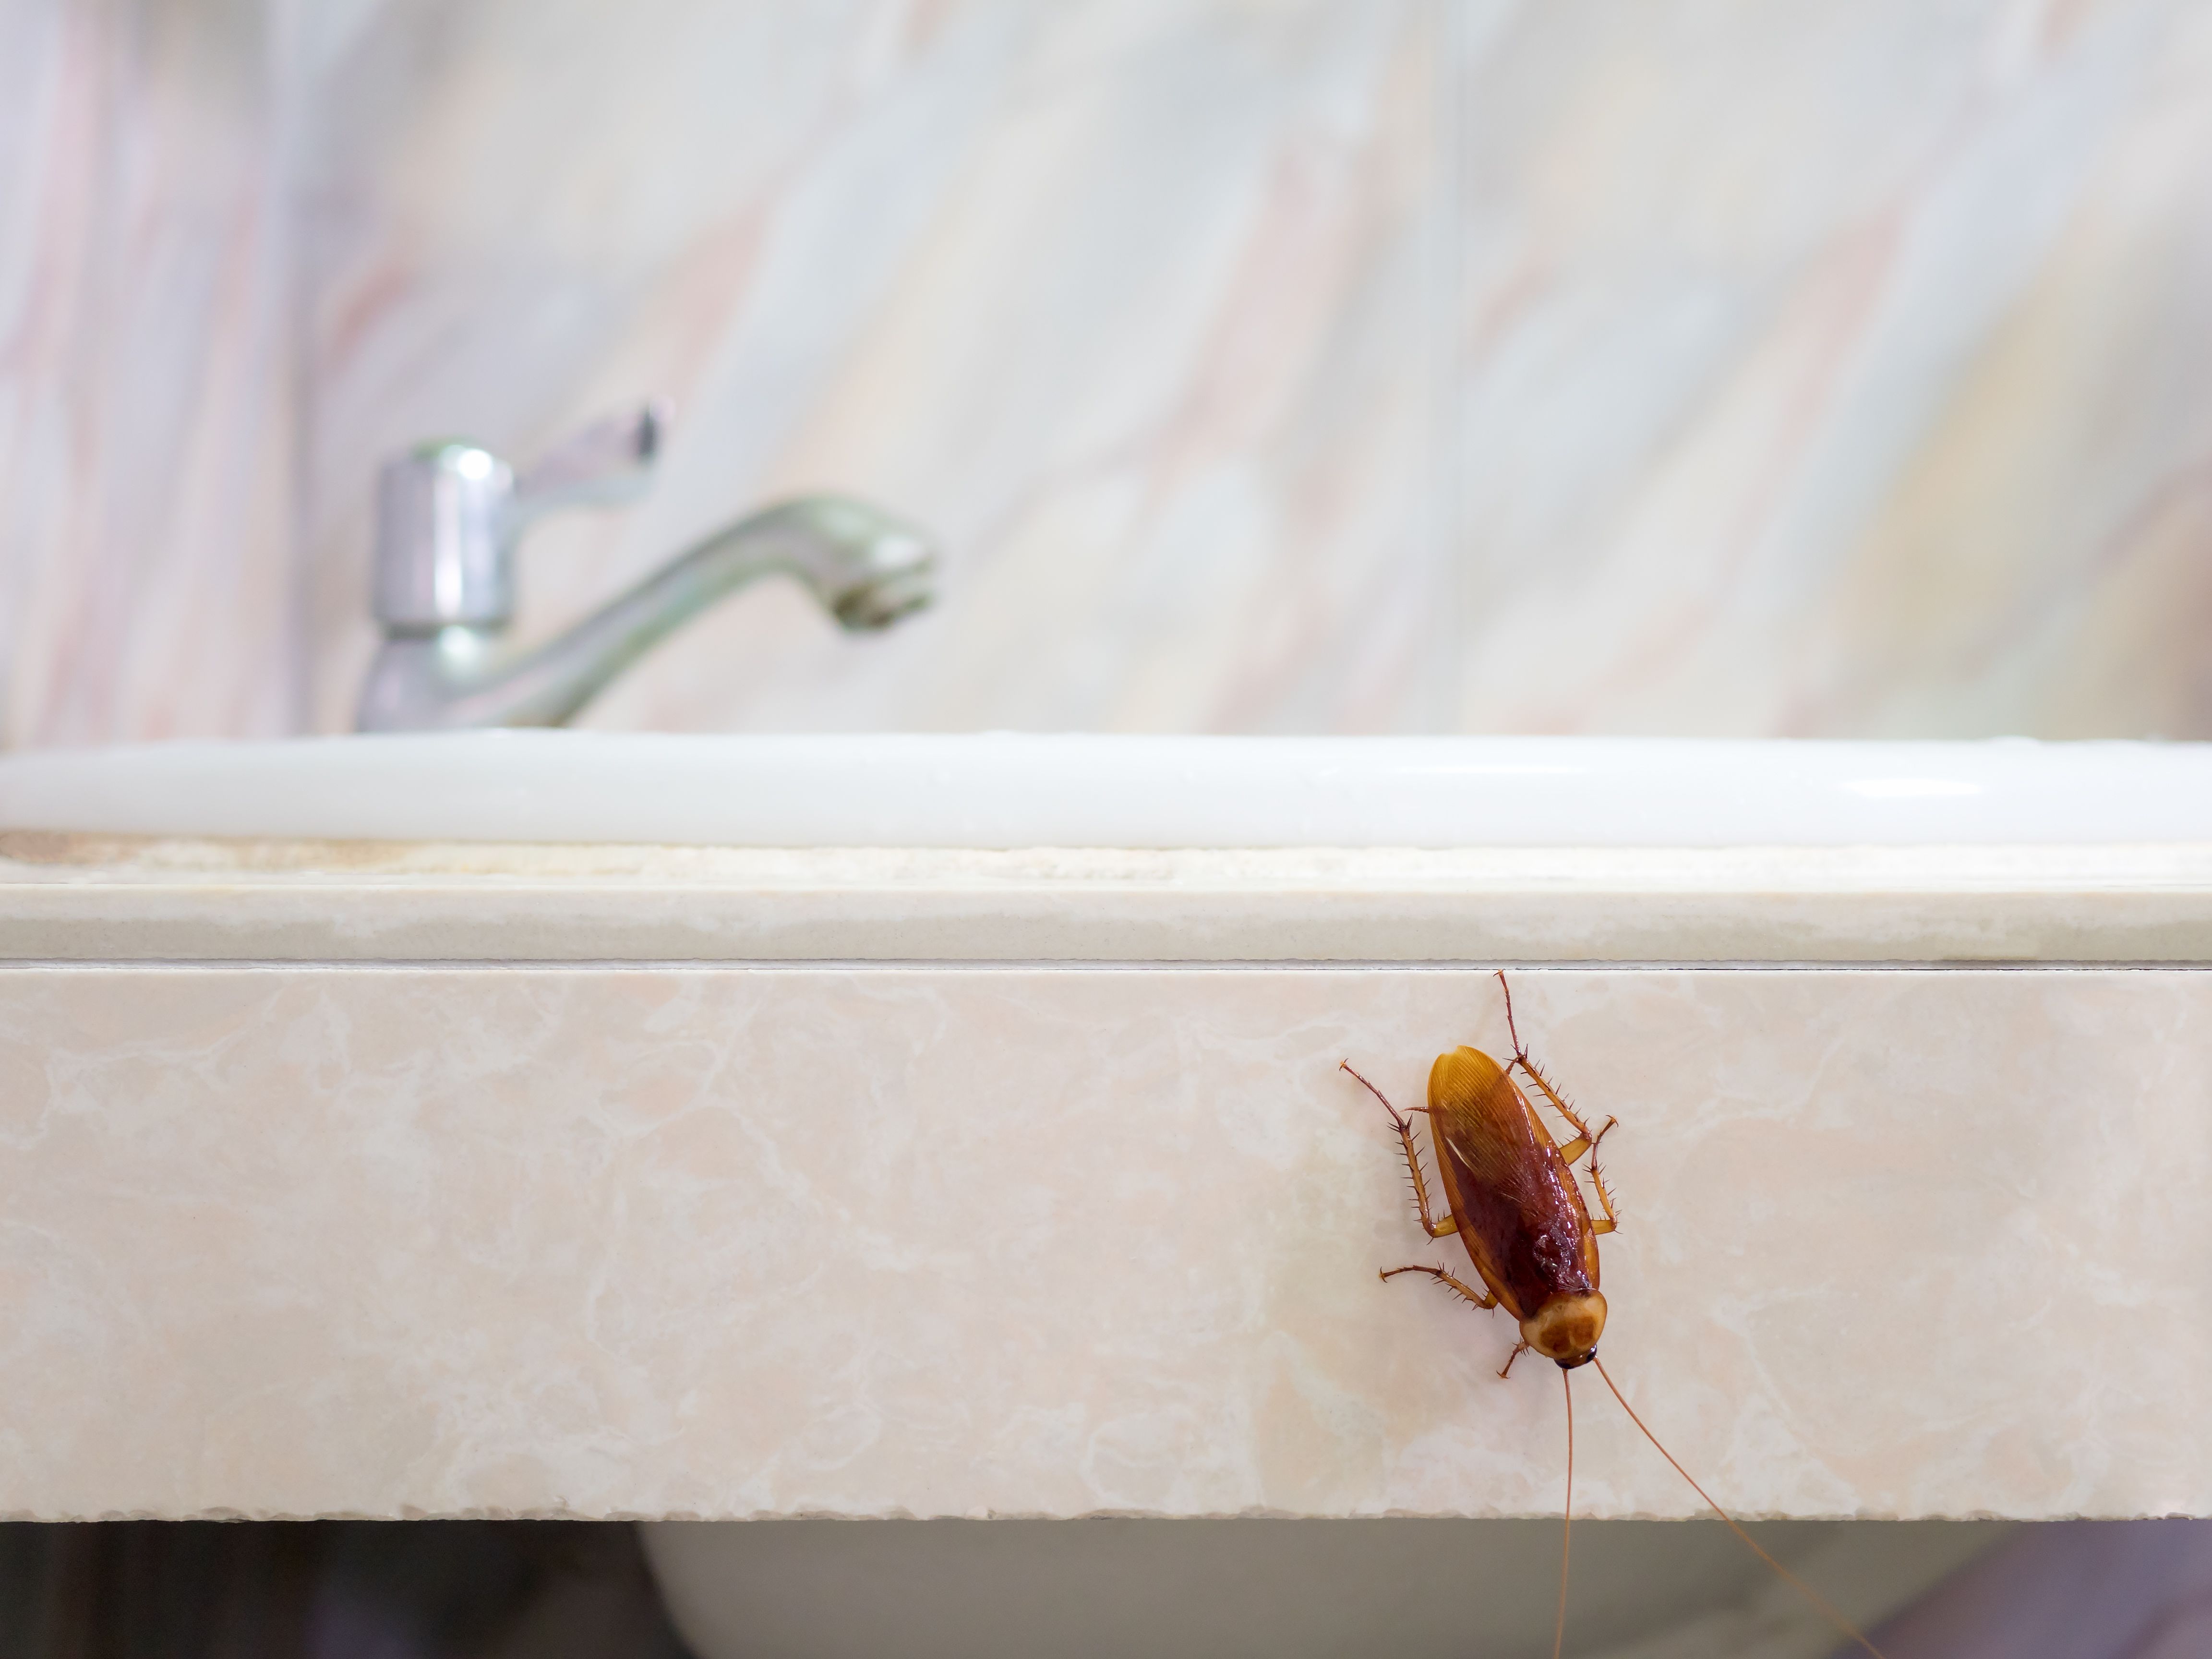 i found a cockroach in my kitchen sink